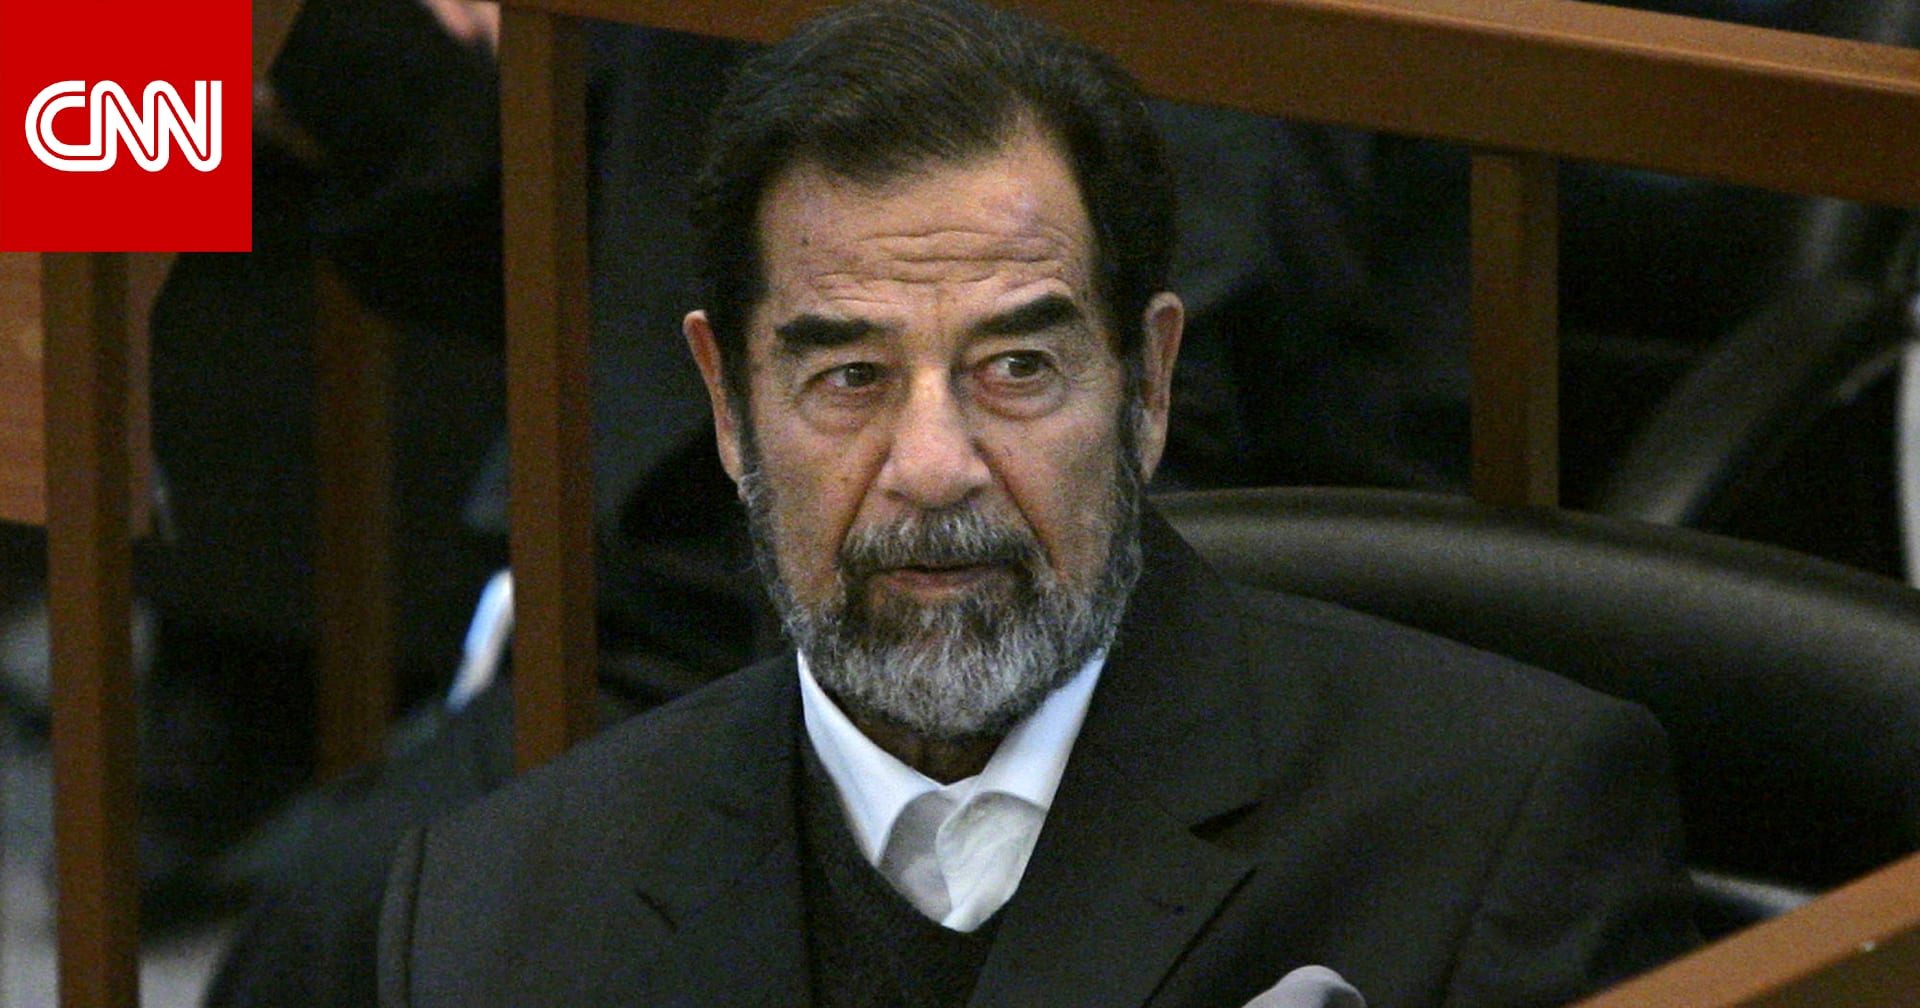 رغد صدام حسين تبدأ نشر مذكرات والدها الخاصة في "المعتقل الأمريكي"